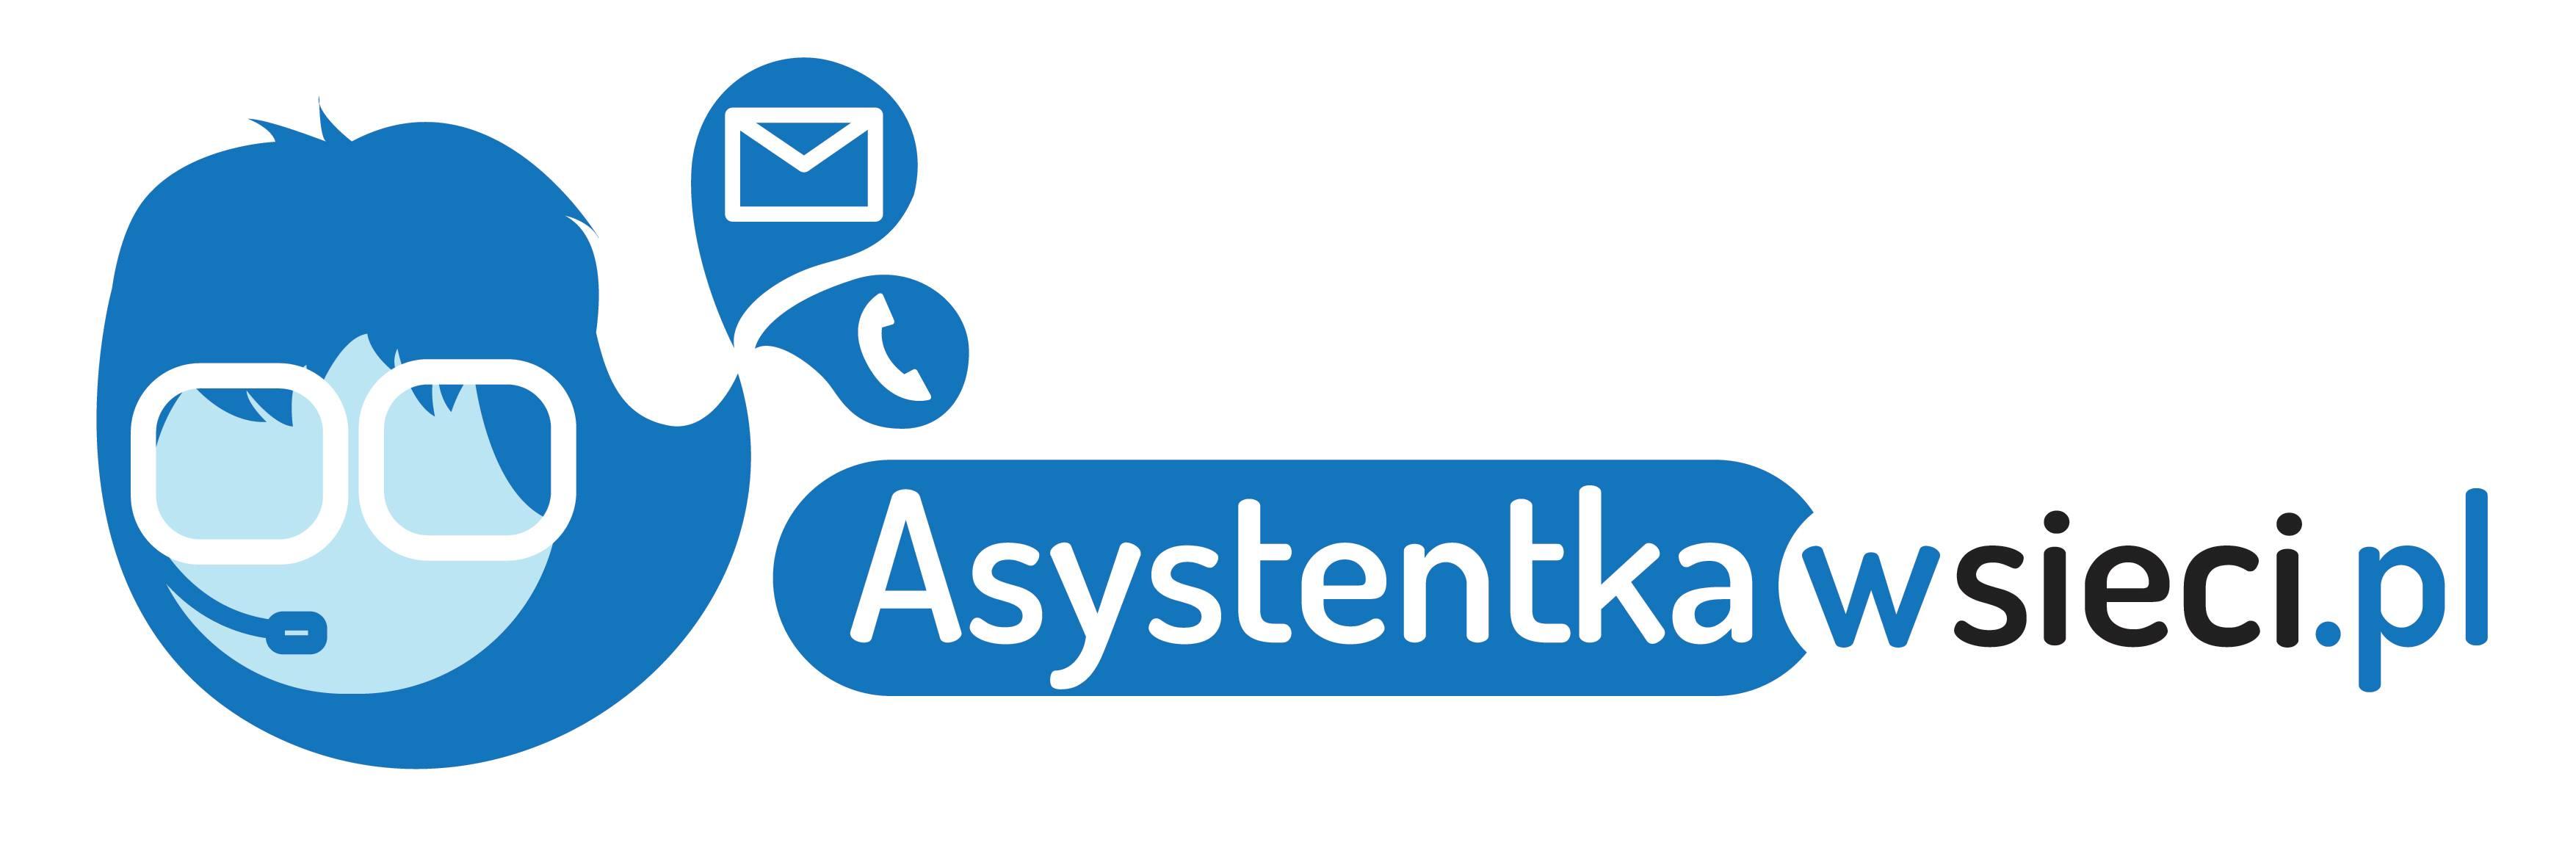 www.asystentkawsieci.pl